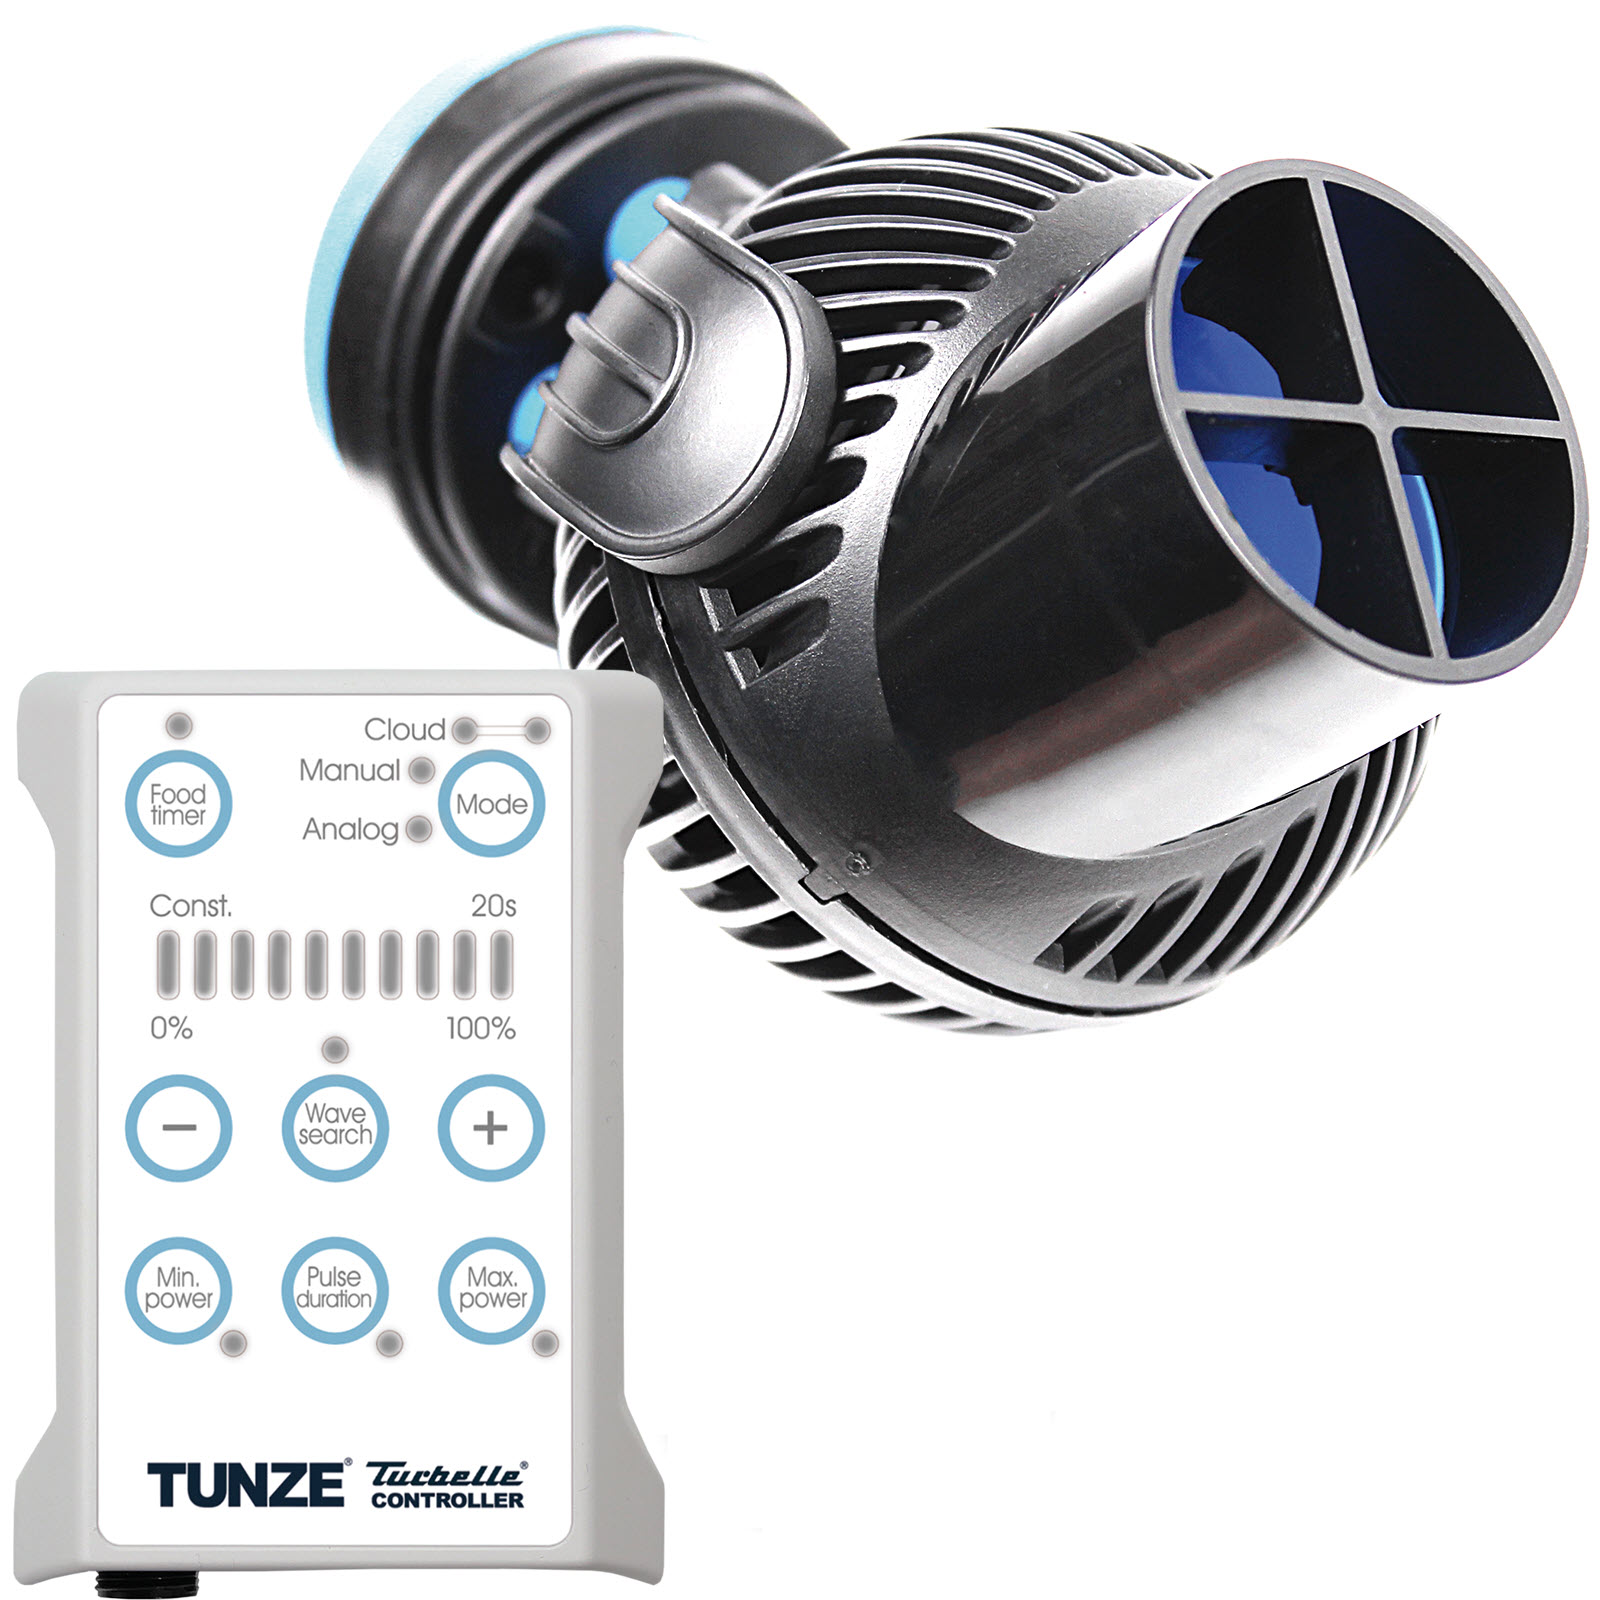 TUNZE Turbelle nanostream 6055 Hub Edition